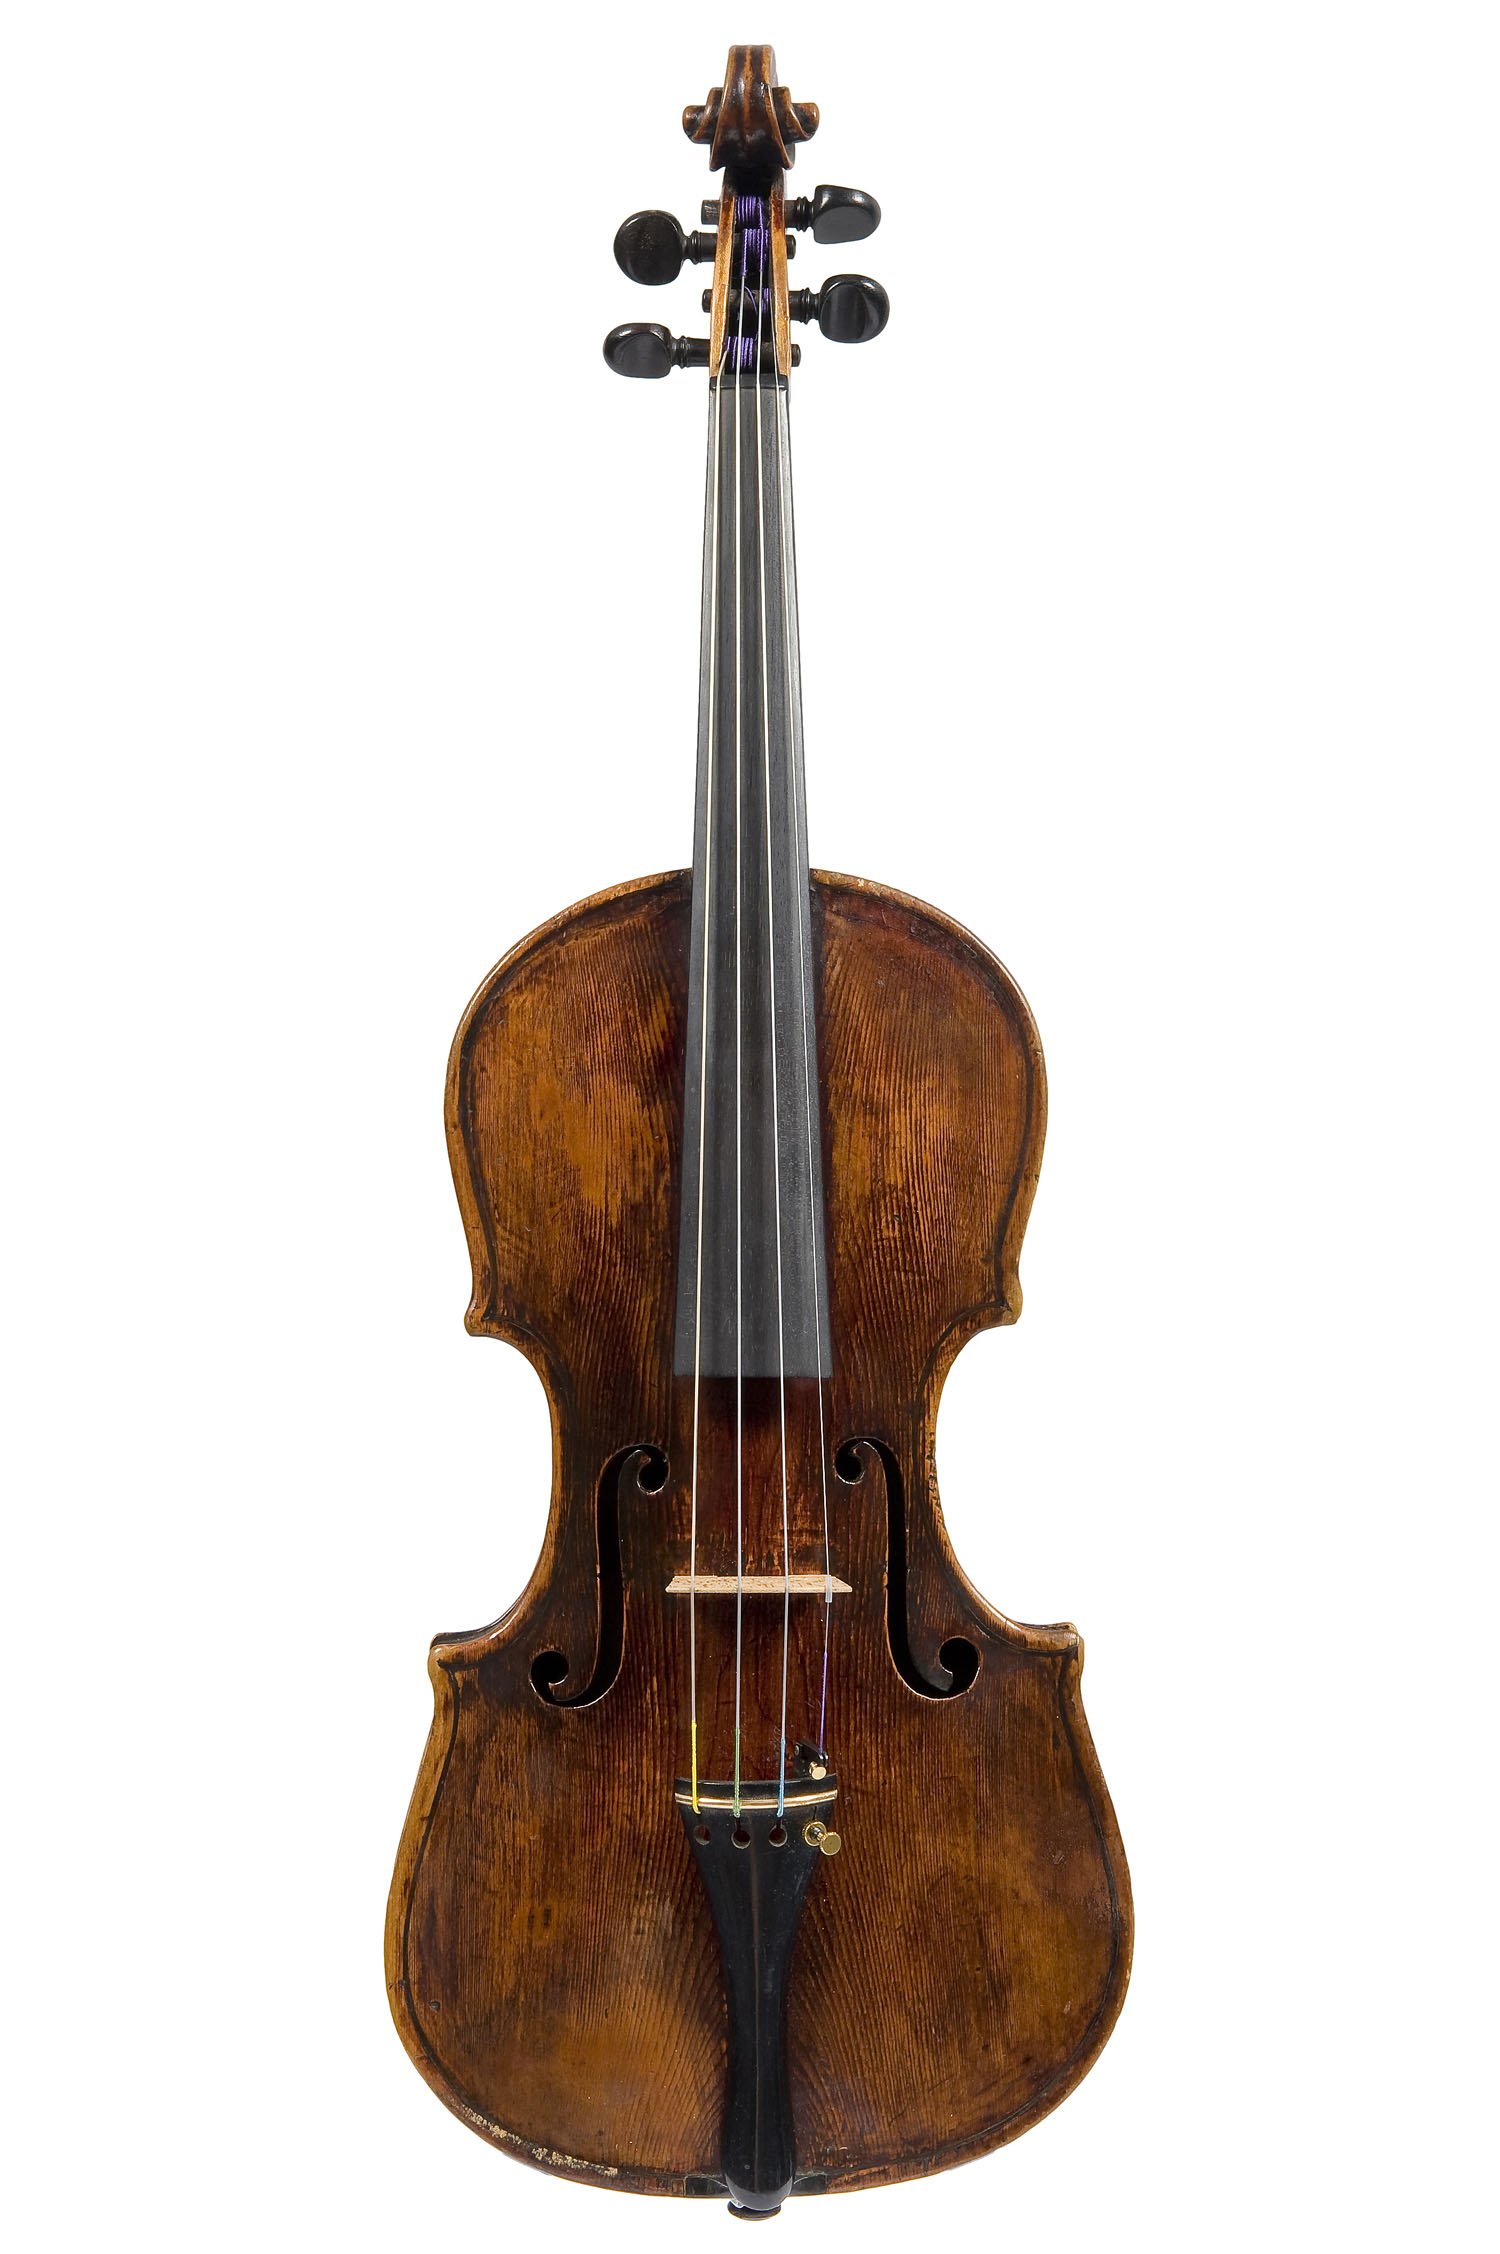 Lot 36 An Italian Violin circa 1790 5th March 2012 Auction